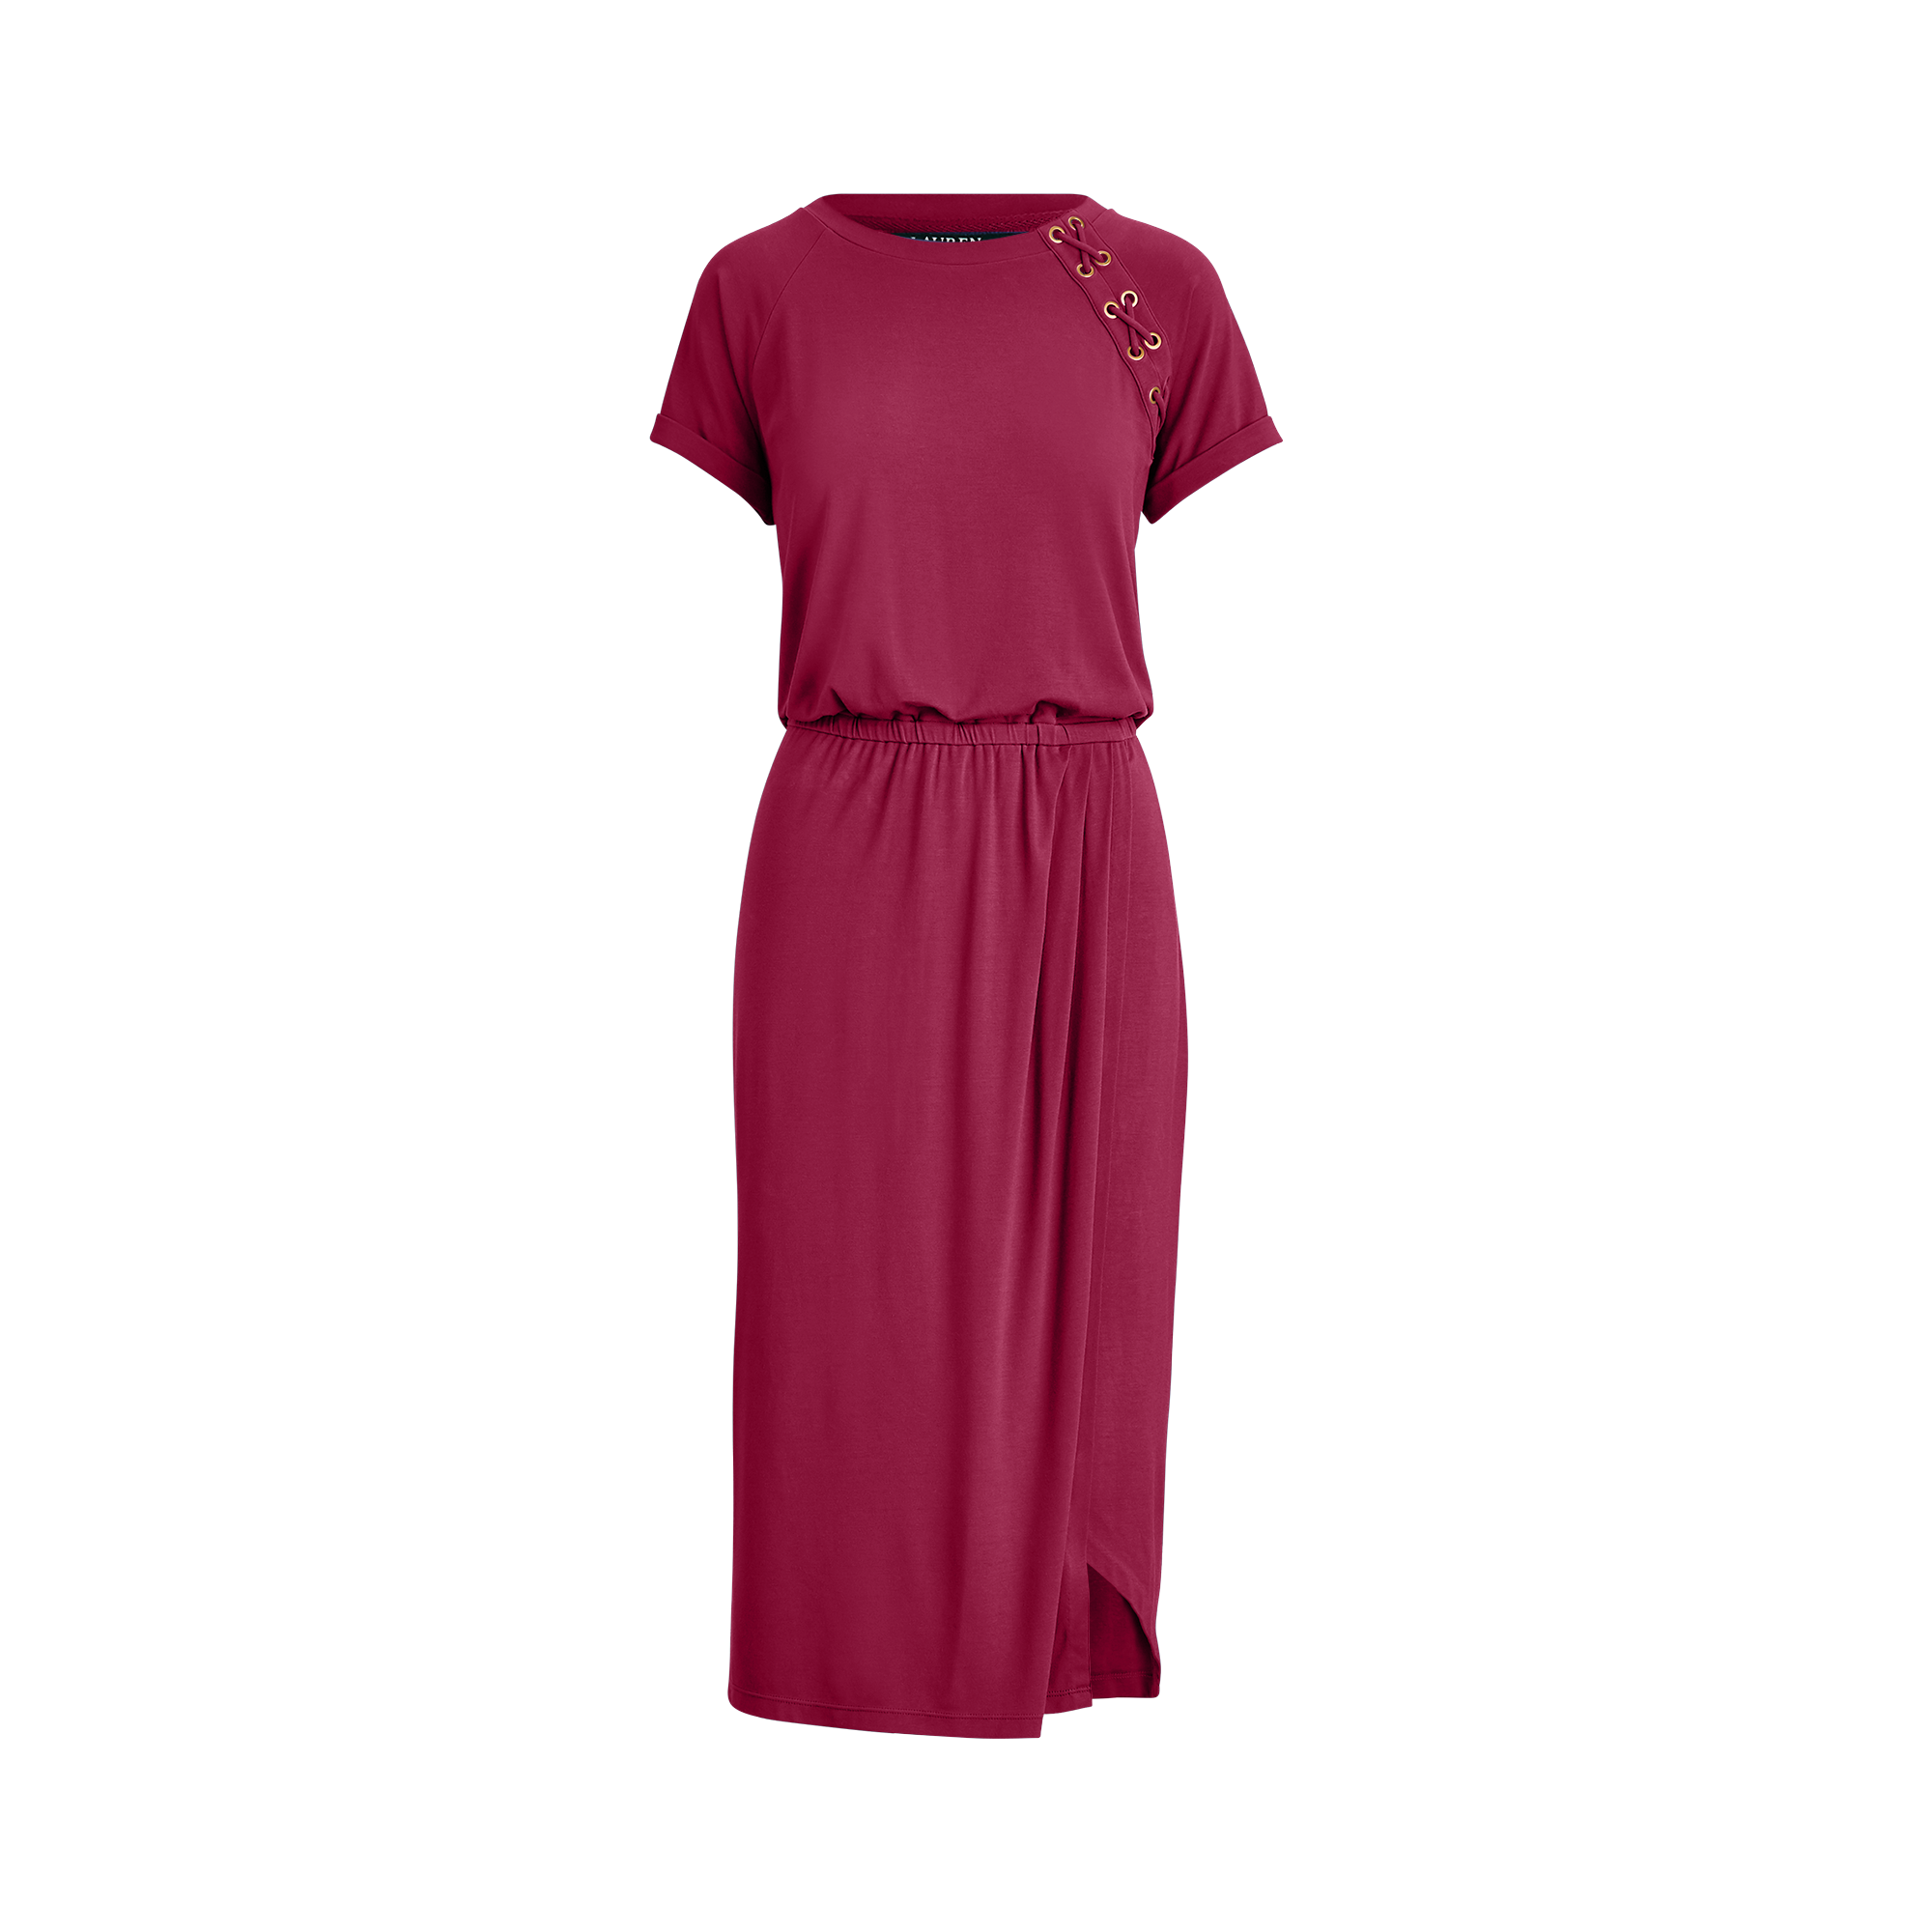 Ralph Lauren Lace-Up Jersey Dress. 1